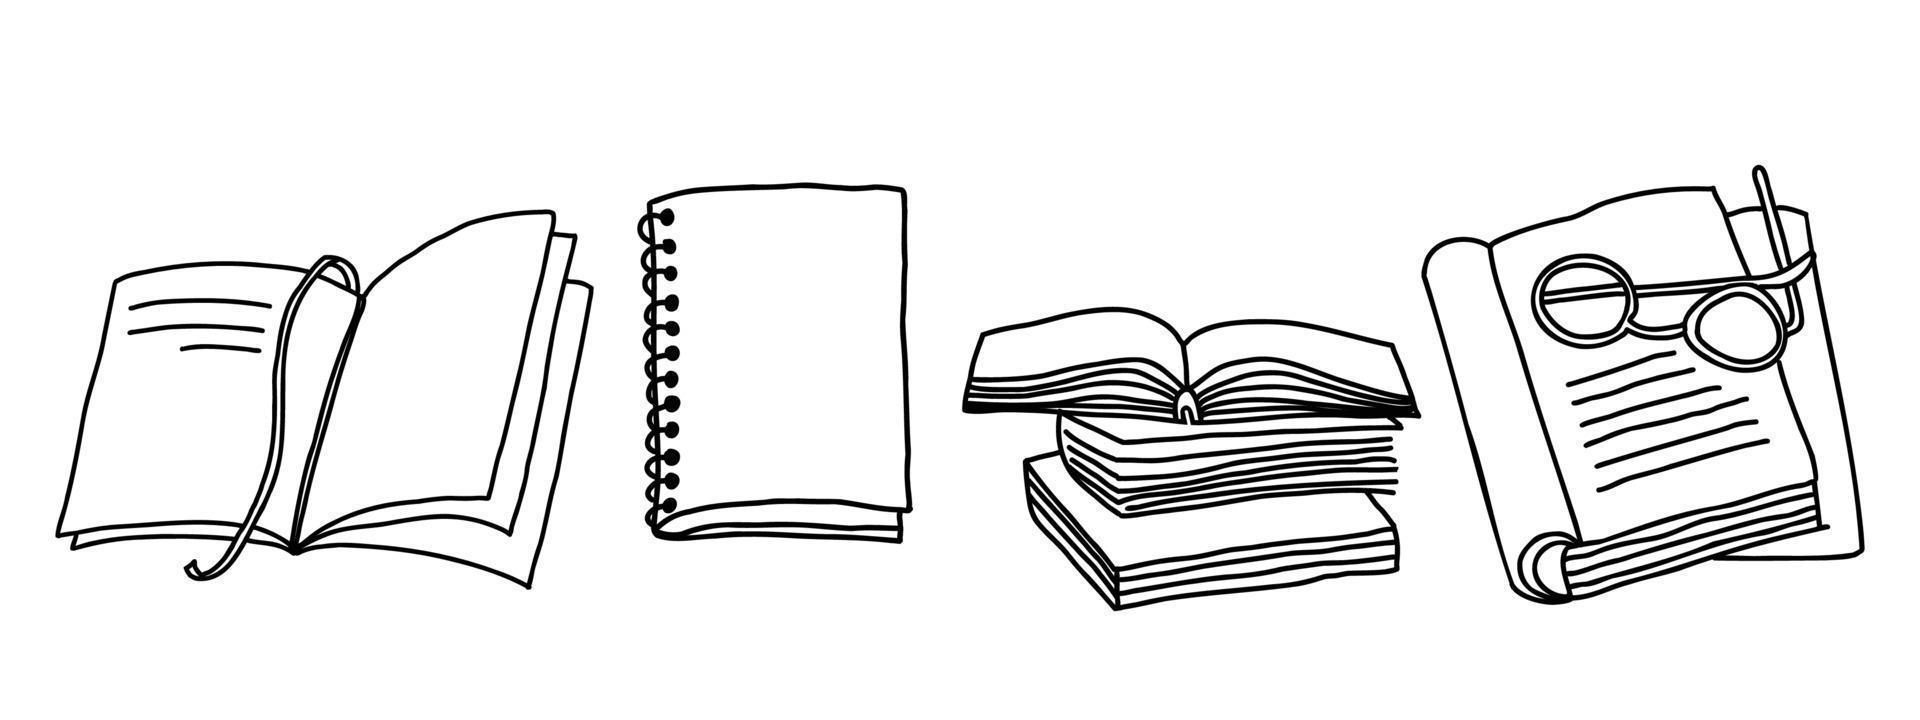 läsning estetisk uppsättning. stack av böcker, lärobok, anteckningsbok linje konst vektor illustration